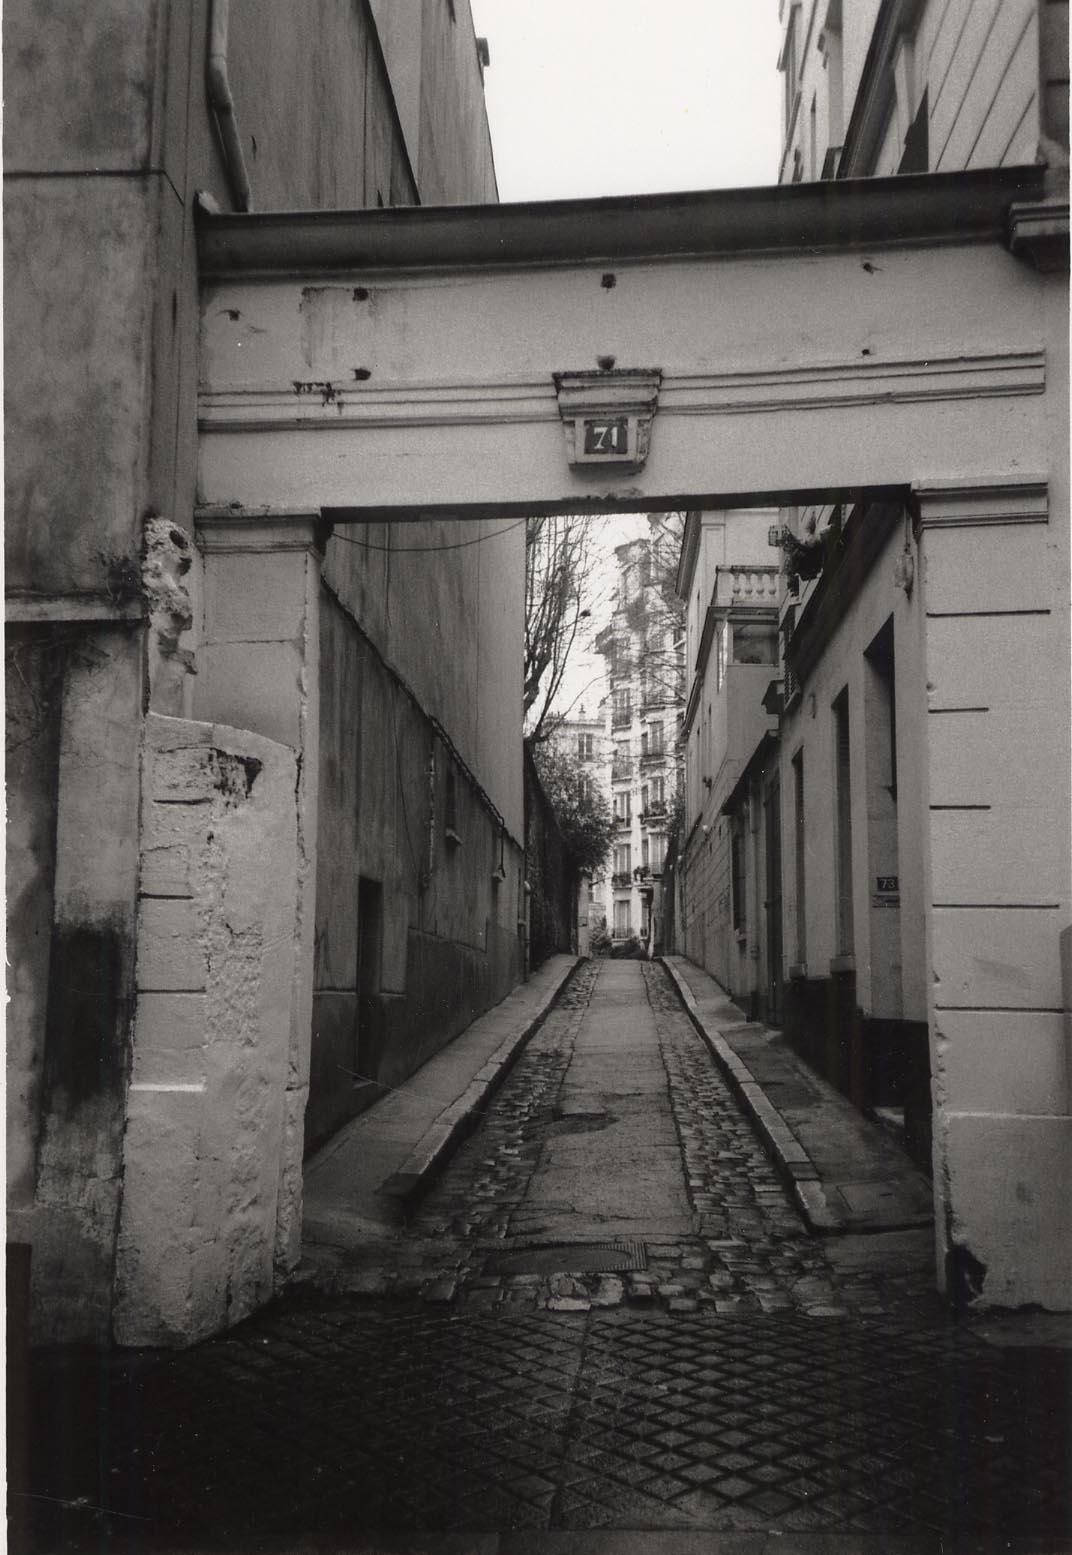 Studio entry, Rue du Cardinal Lemoine, Paris (1998)